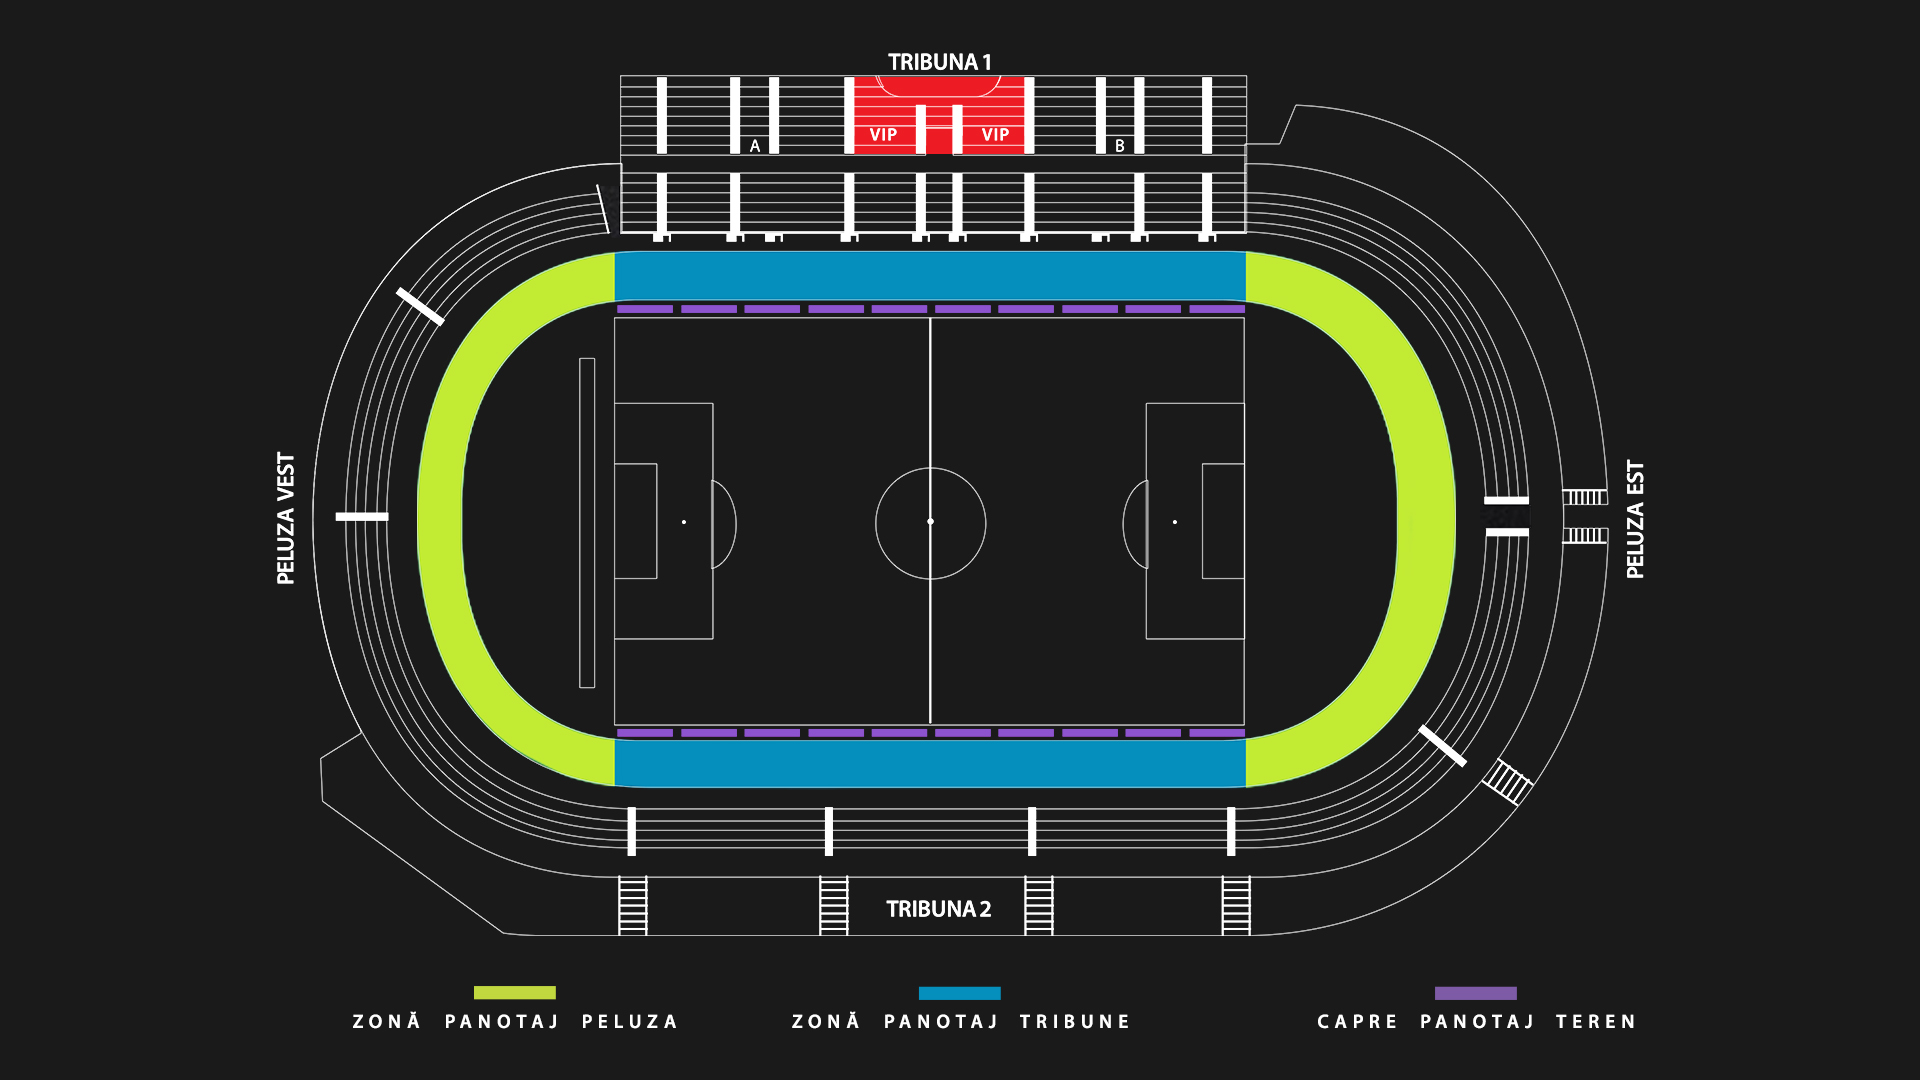 Prețurile la biletele FC Hermannstadt pe Municipal - 50 de lei la tribunele  1 și 2 - Abonamente de la 400 la 3.500 de lei